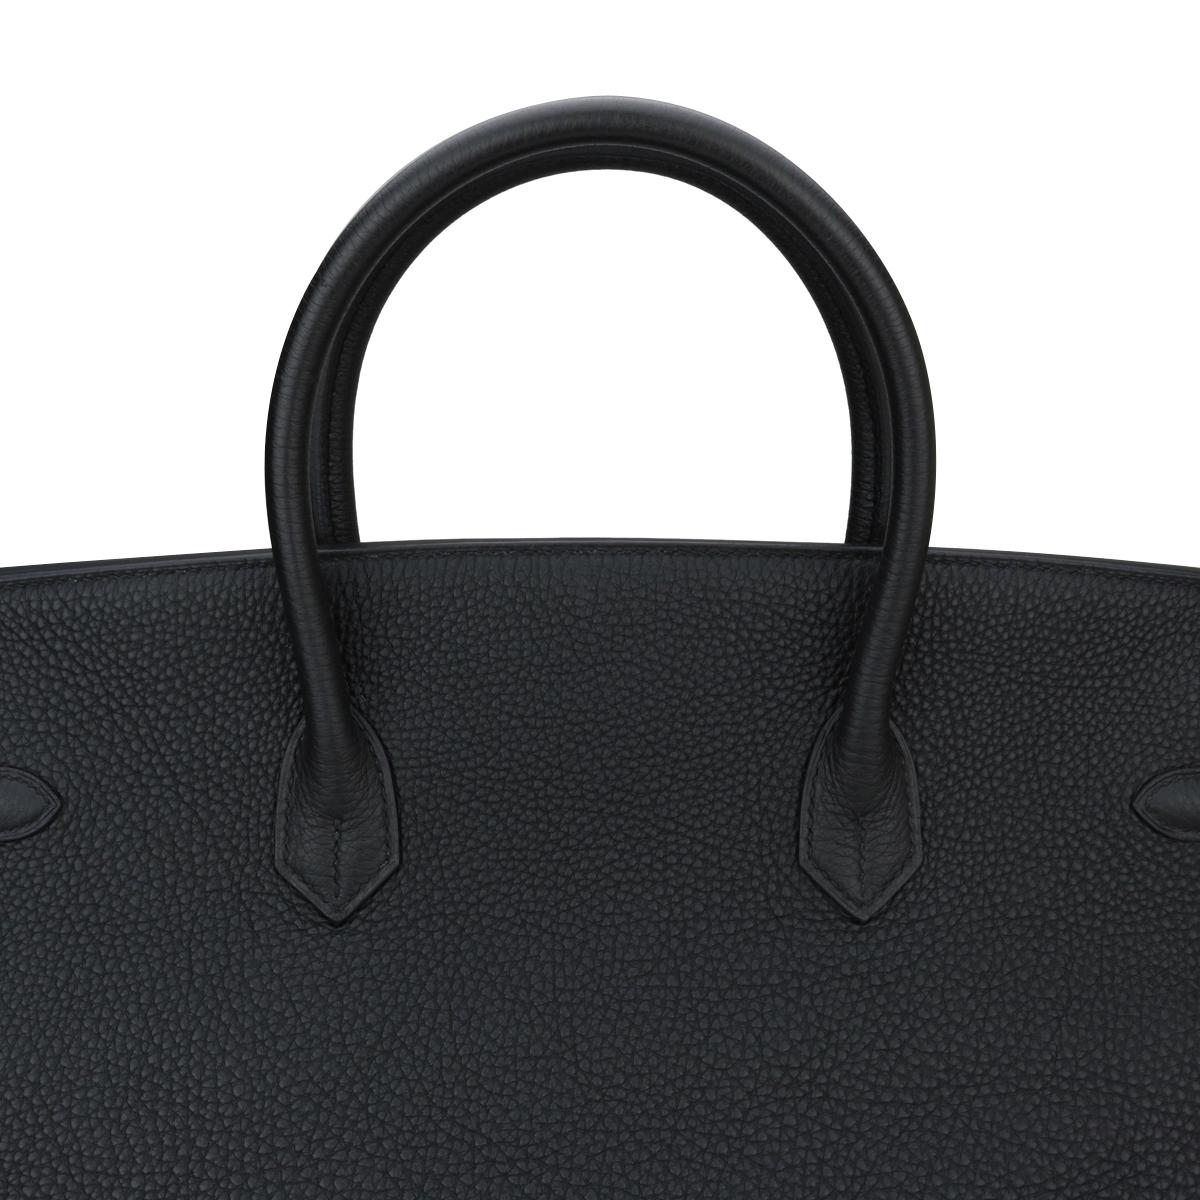 Hermès Birkin Bag 40cm Black Togo Leather with Gold Hardware Stamp N 2010 9